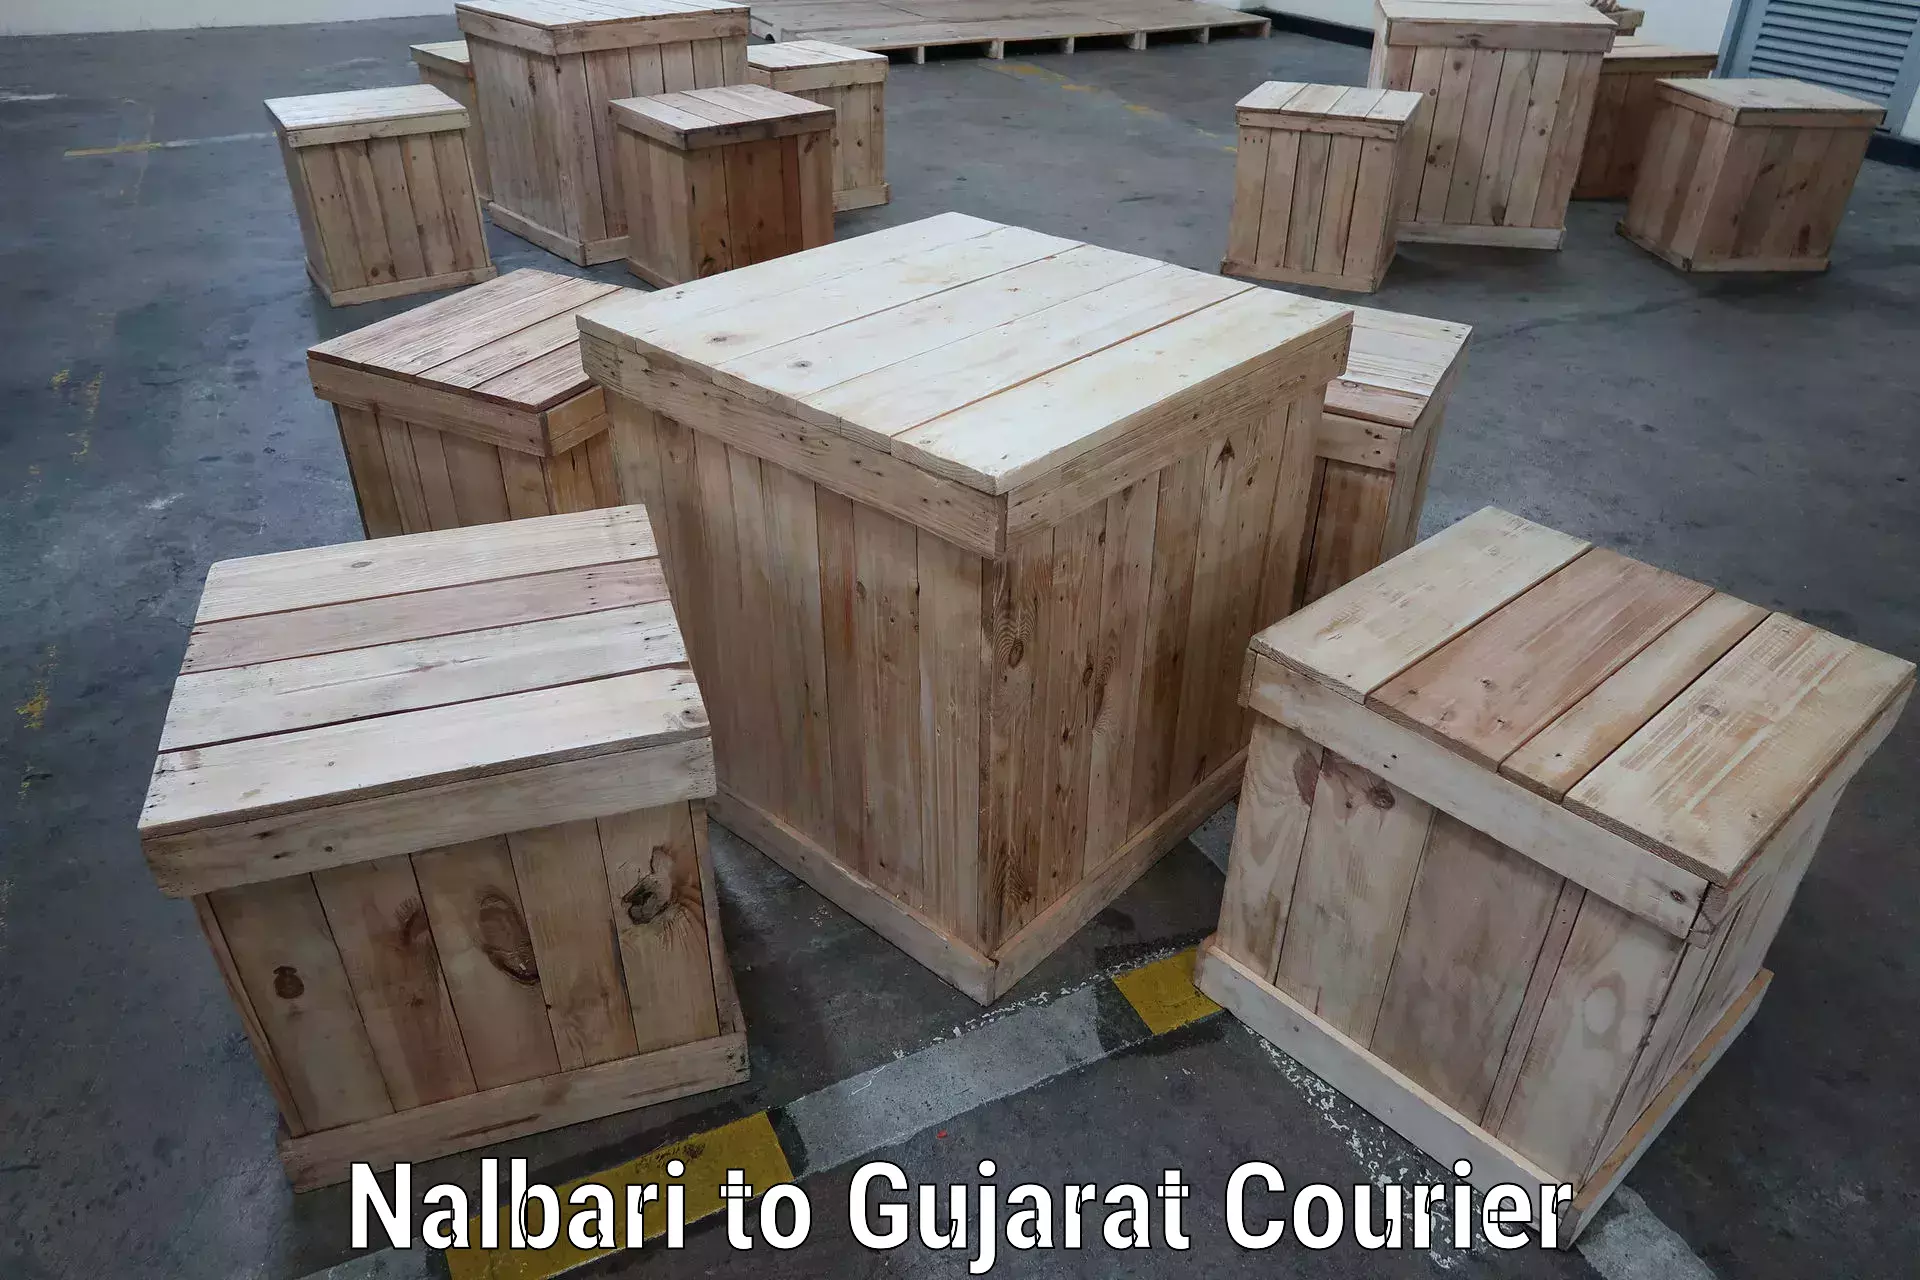 Next-day freight services Nalbari to Gujarat